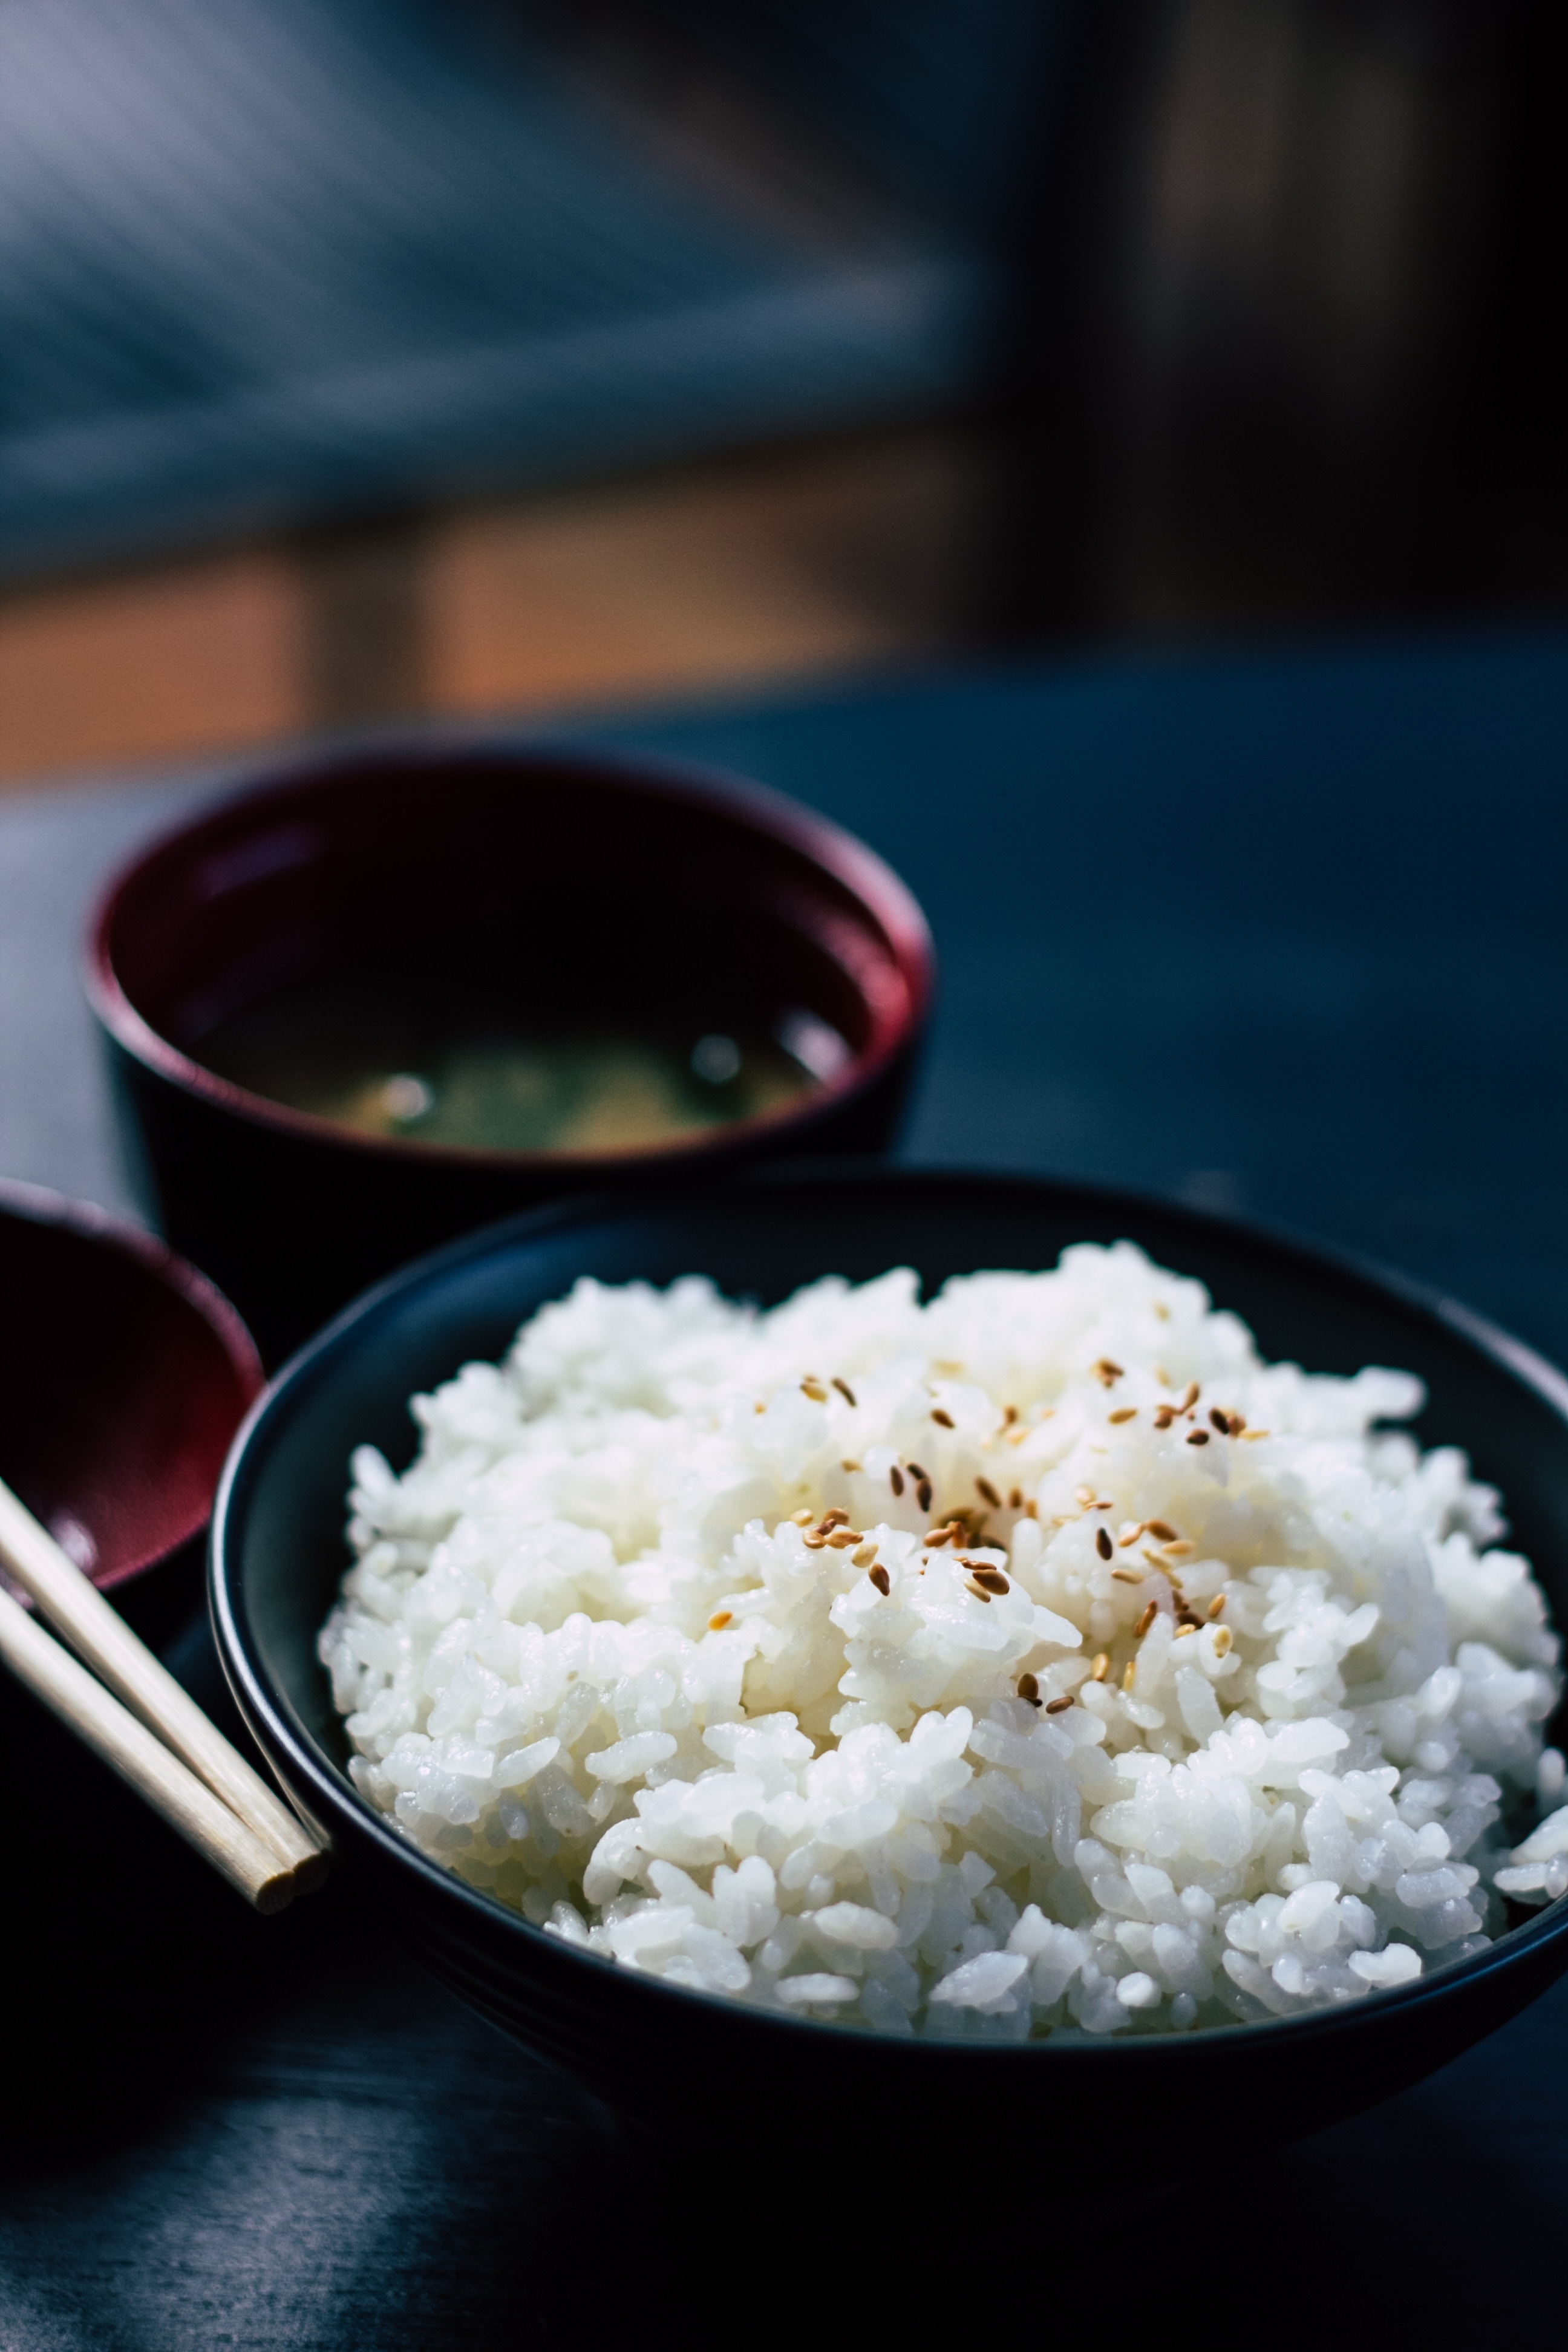 Asalnya sama, nasi punya 4 nama beda menurut wujud & tahap mengolahnya